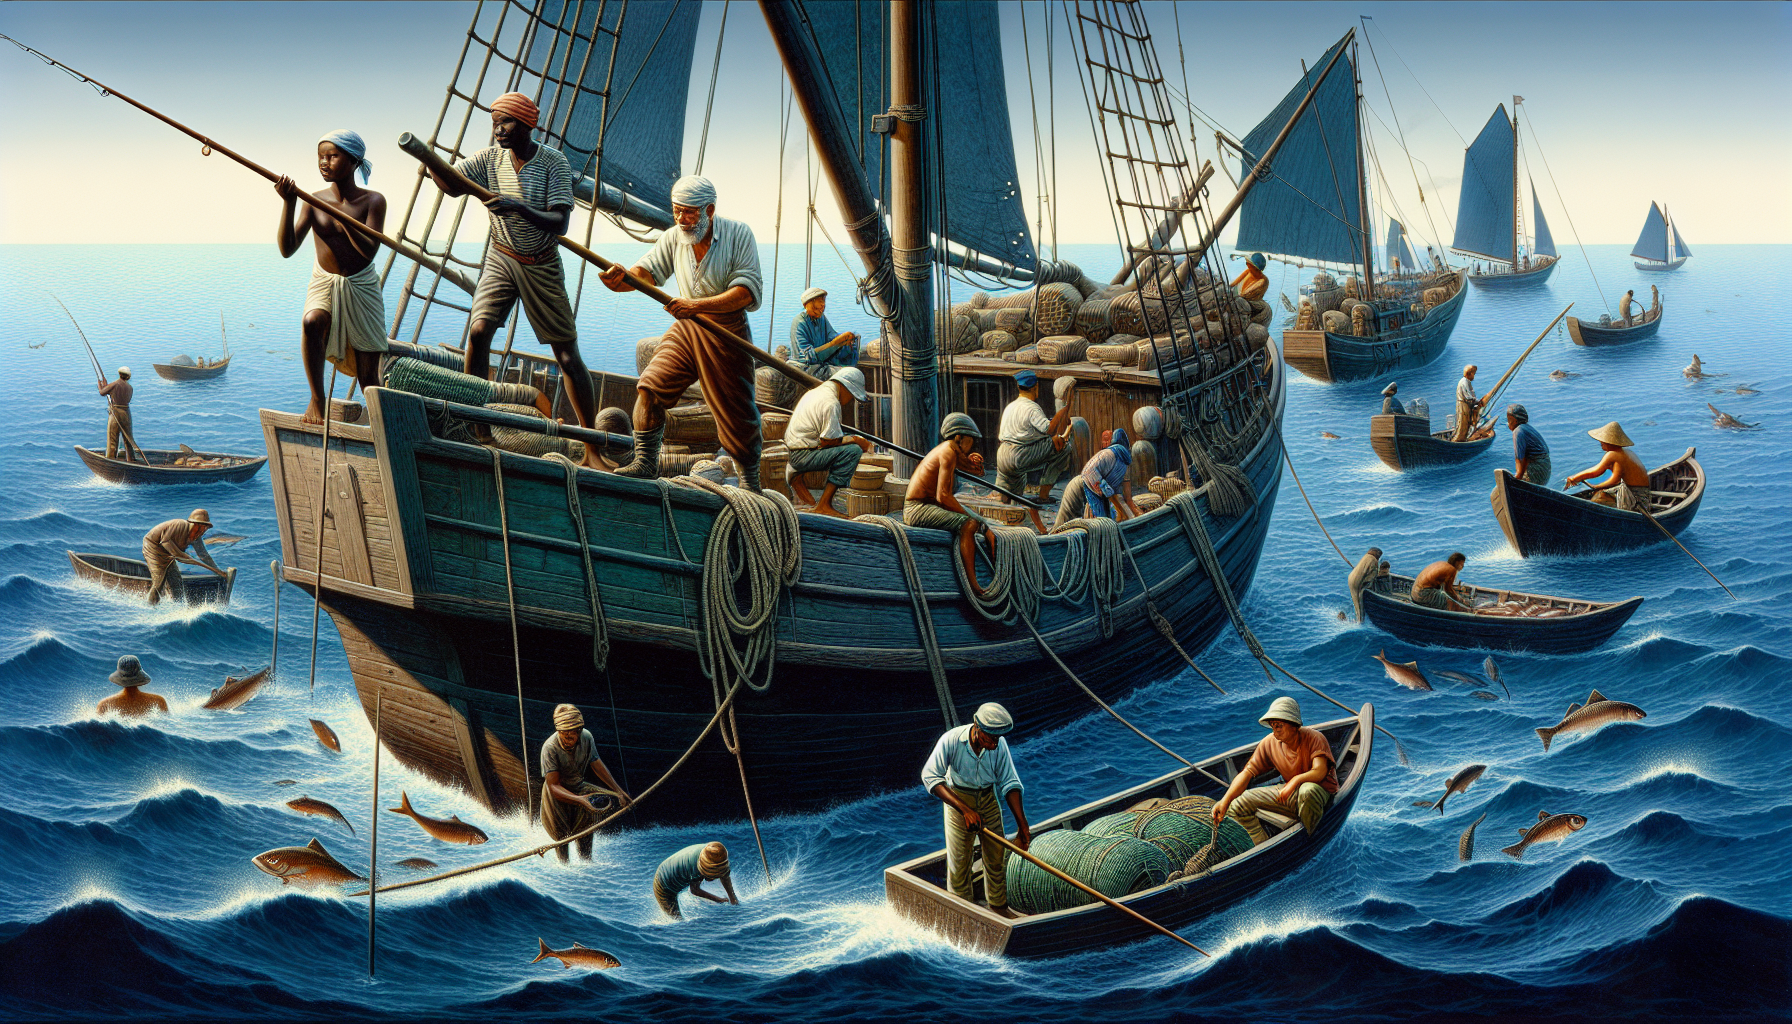 Nghề đánh cá: Con người vùng biển đã lâu lắm rồi đã phụ thuộc vào nghề đánh cá để kiếm sống. Họ đi ra khơi bằng những chiếc thuyền, tàu cá để chìm sứt lòng đại dương và đánh bắt cá.